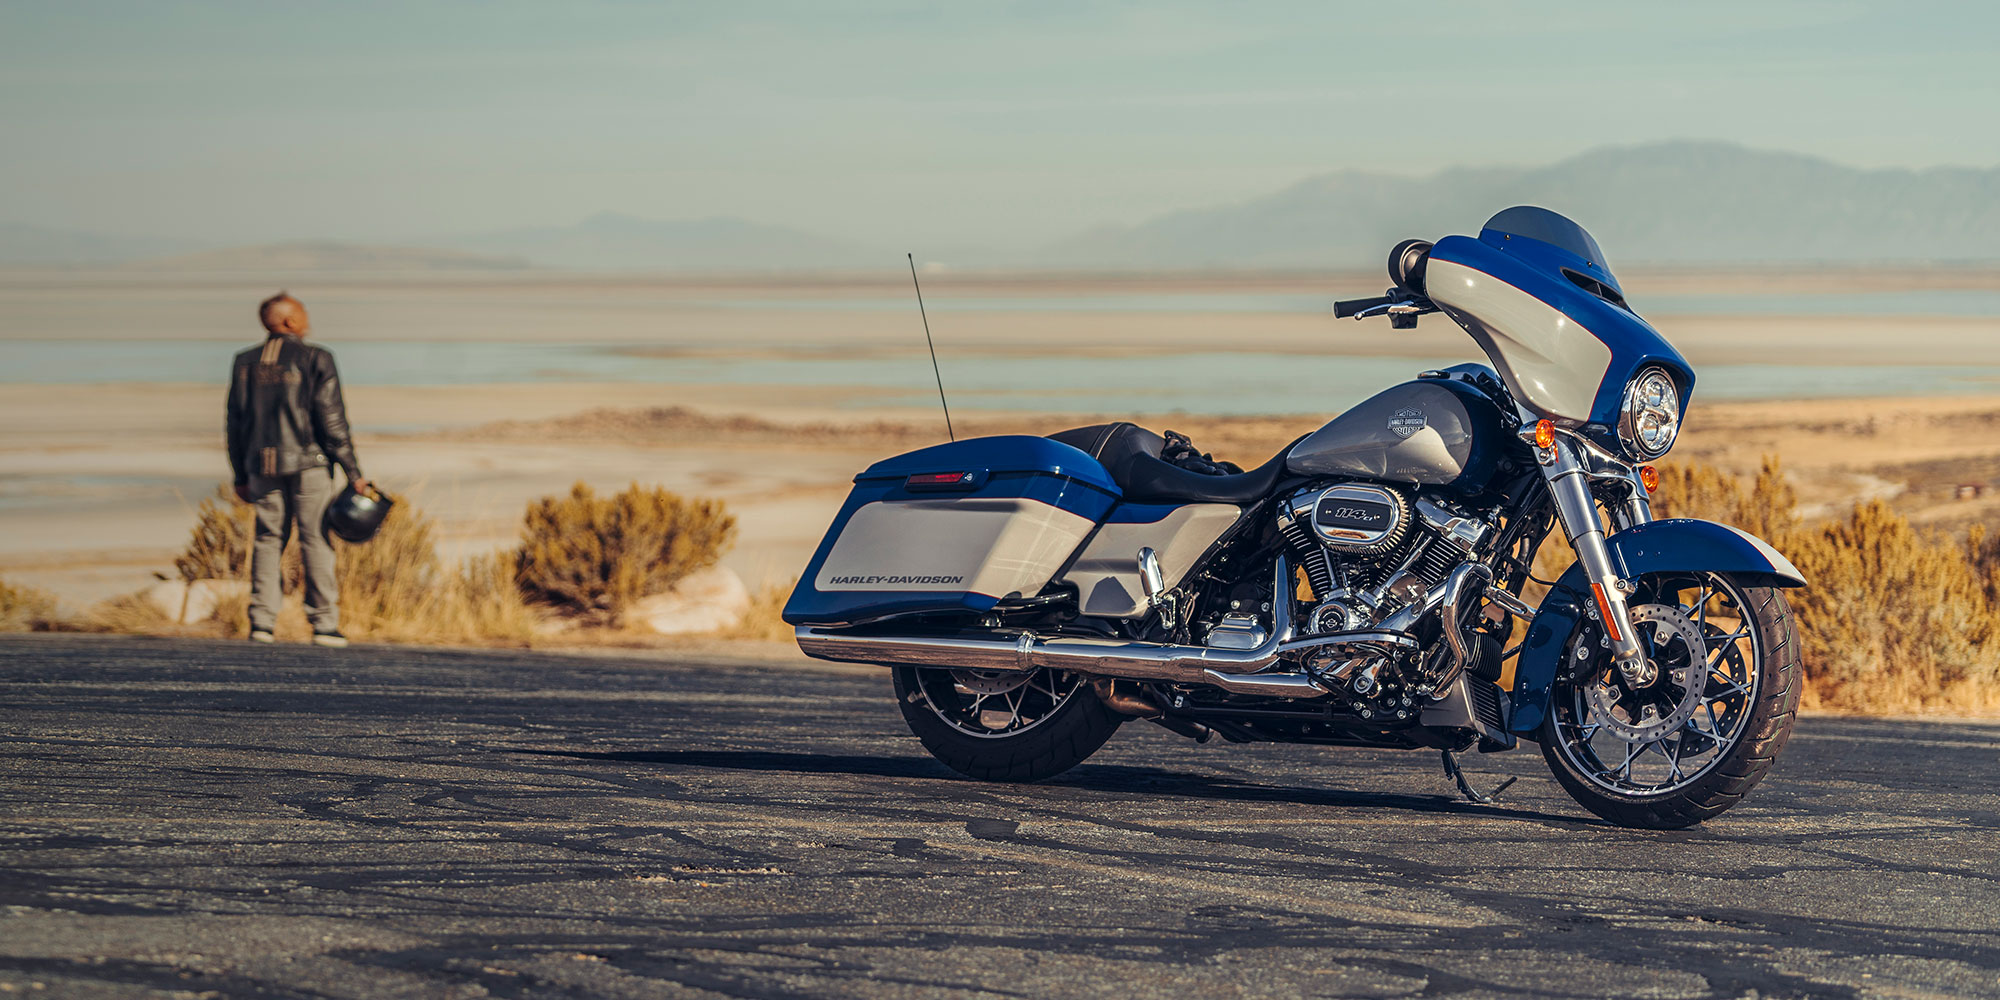 Chi tiết 8 mẫu xe moto mới nhất 2018 thuộc dòng Softail của HarleyDavidson   Motosaigon